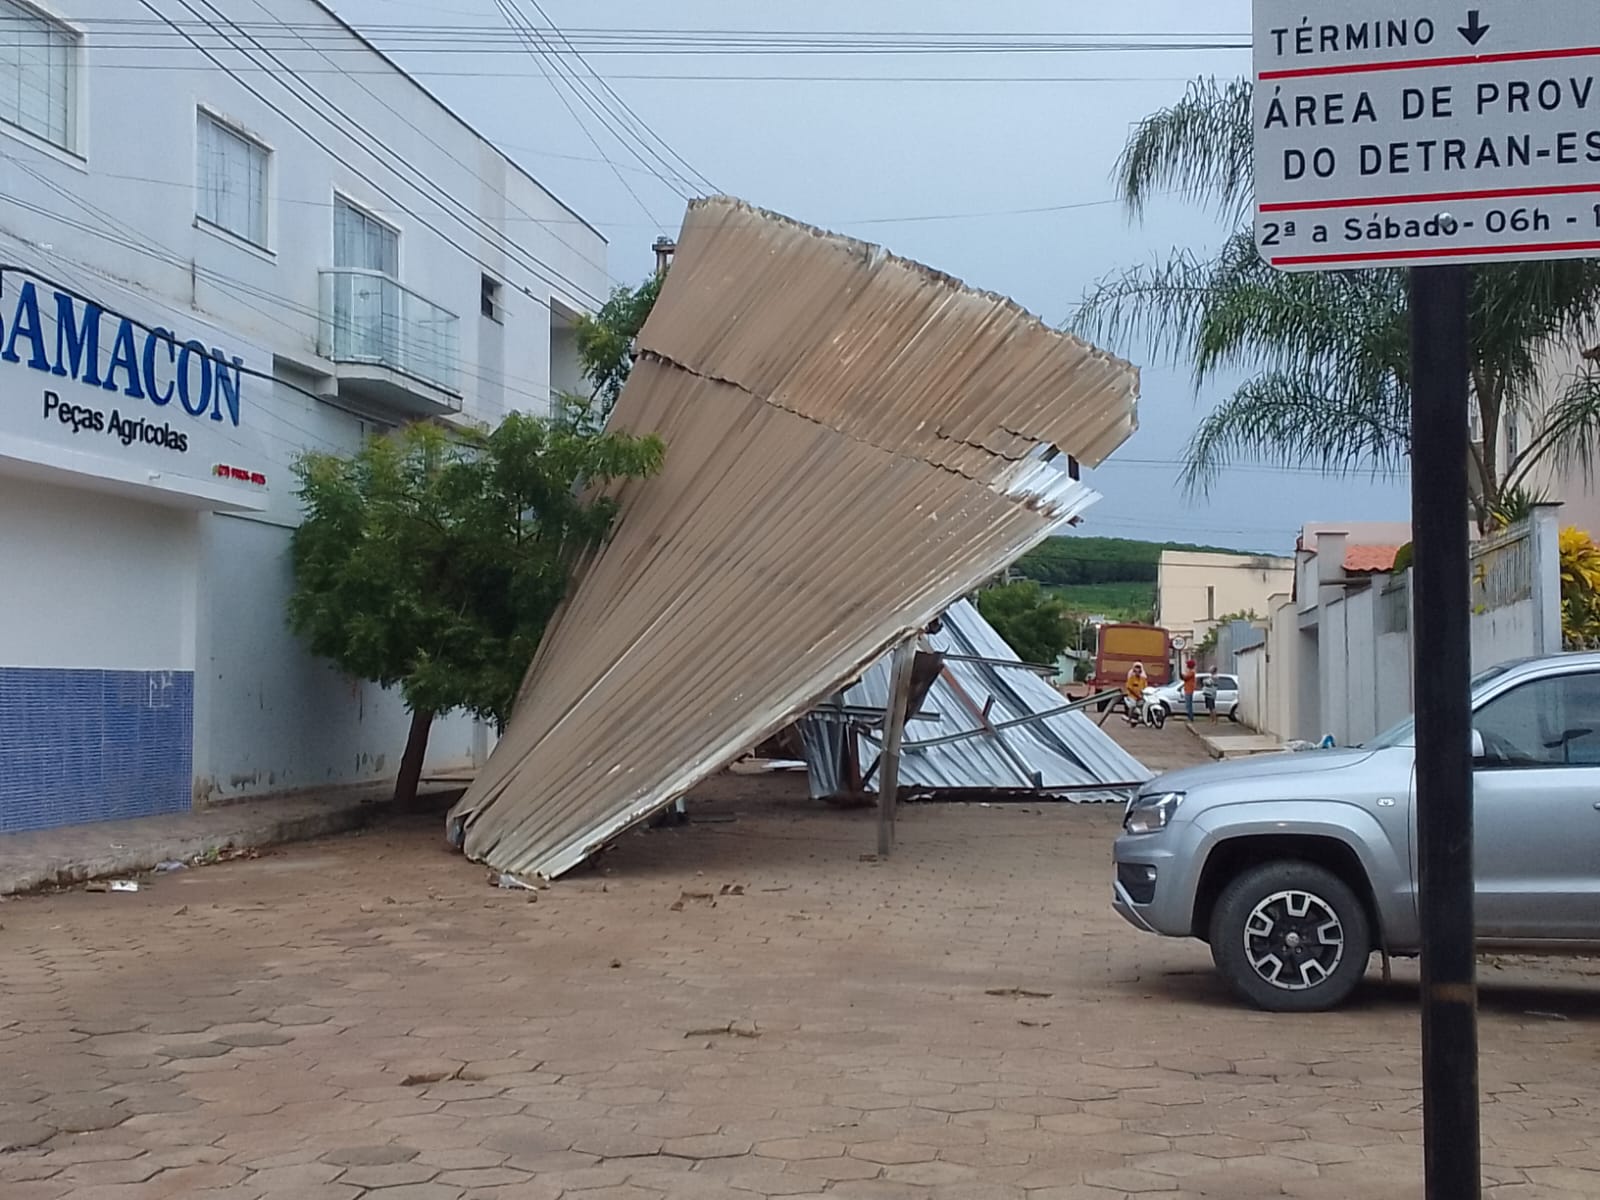 Não há relatos de pessoas feridas com a queda da estrutura. A Prefeitura de Pinheiros  informou que foi consequência de um vento forte isolado durante chuva